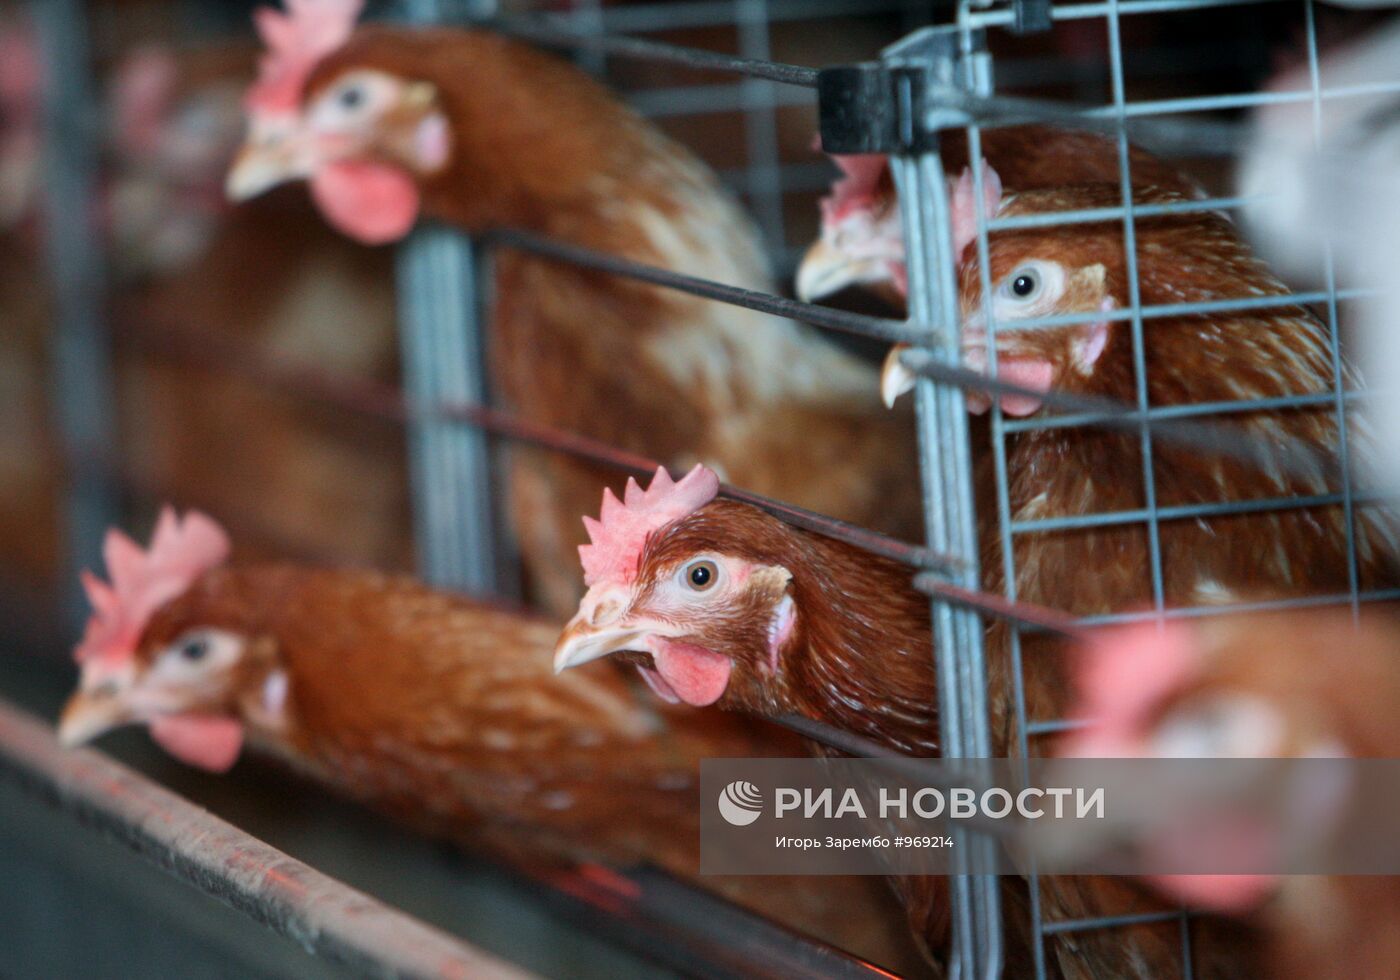 Работа Гурьевской птицефабрики в Калининградской области